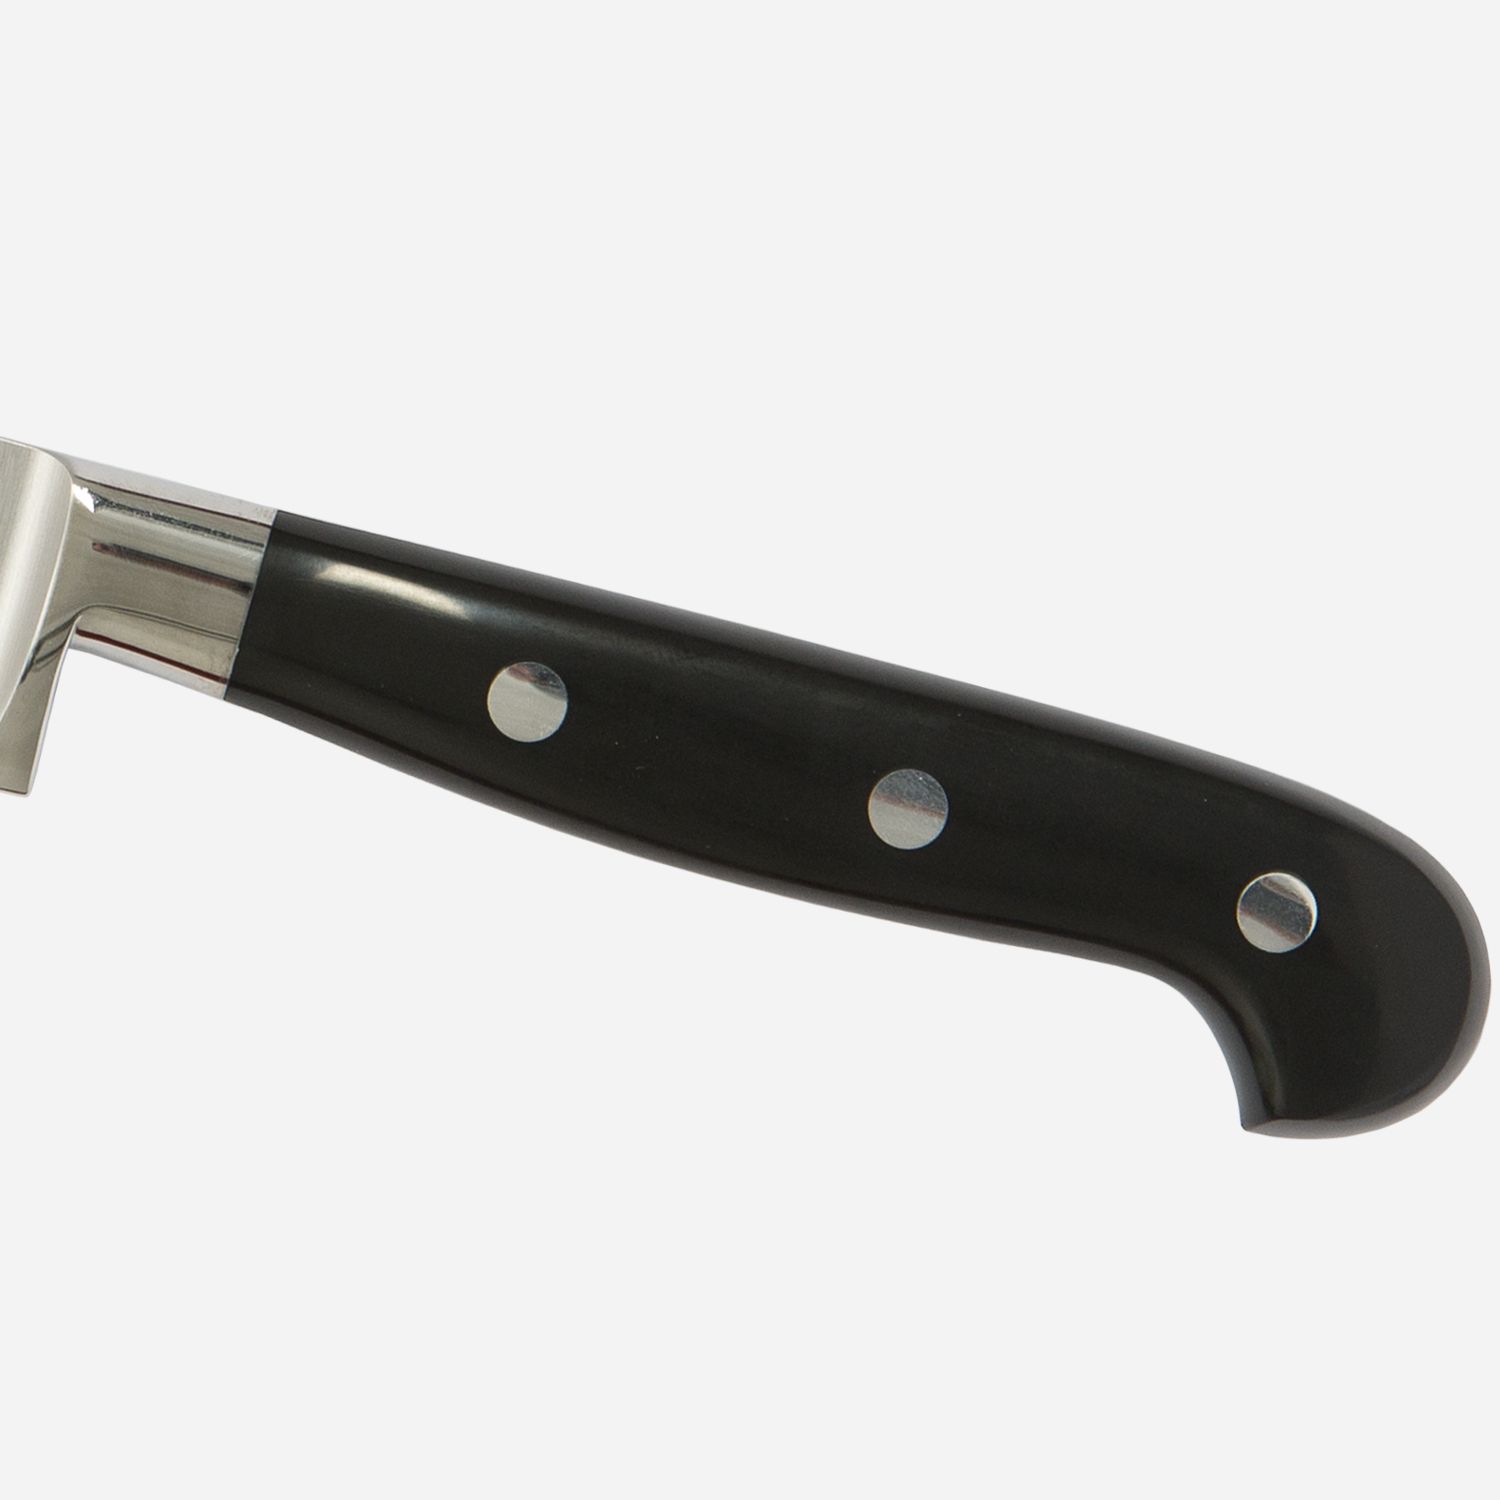 Paring knife cm.7,5 Stainless Steel Berkel Adhoc Handle Glossy Black Resin